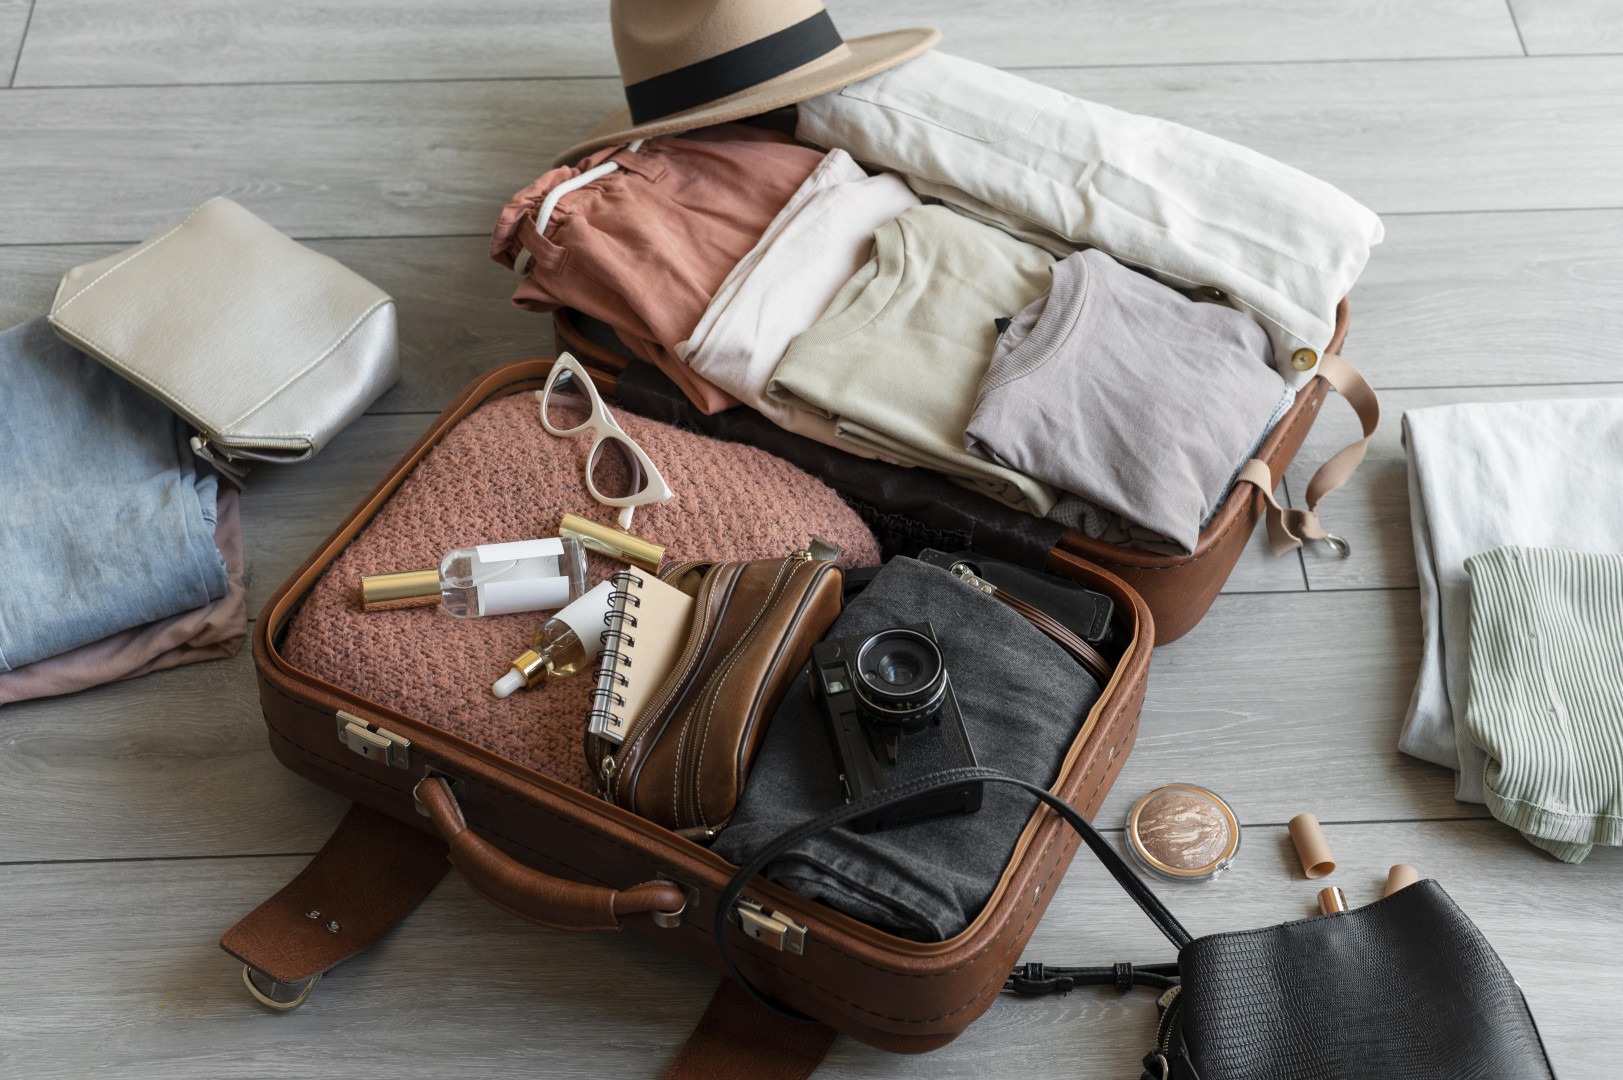 Cestovná taška na kolieskach: Prečo si ju zaobstarať?